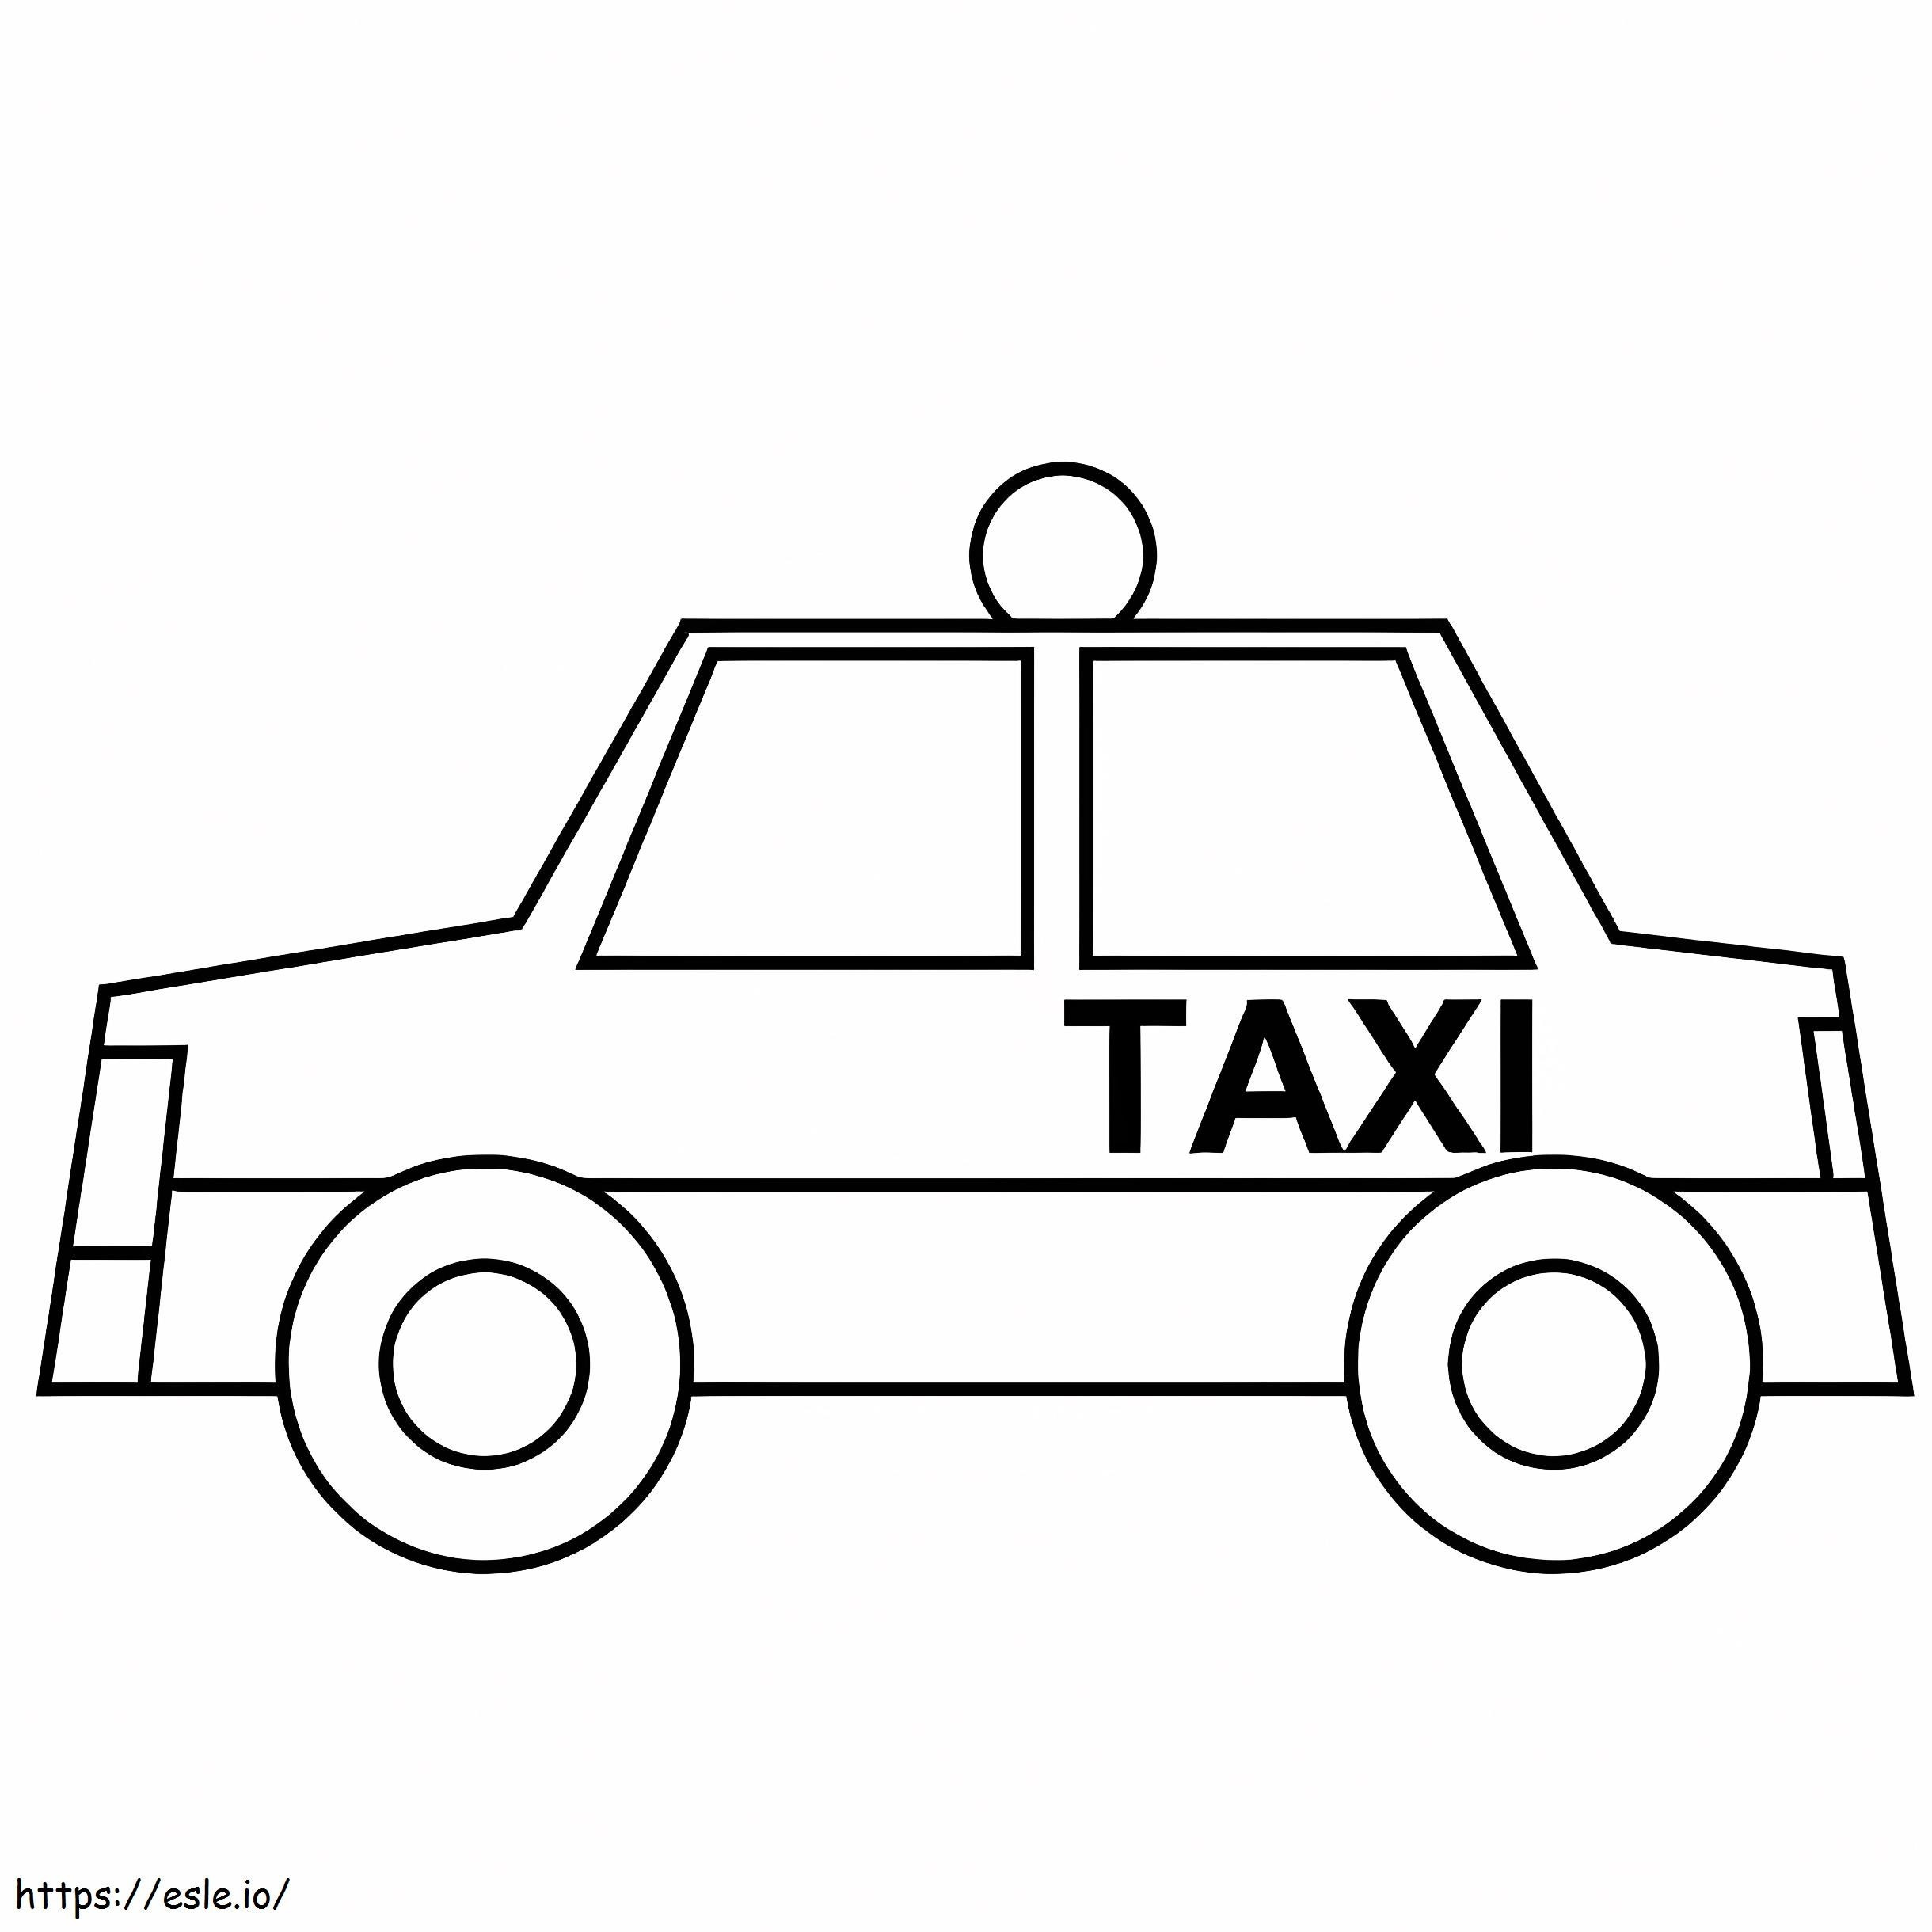 Taxi einfach ausmalbilder